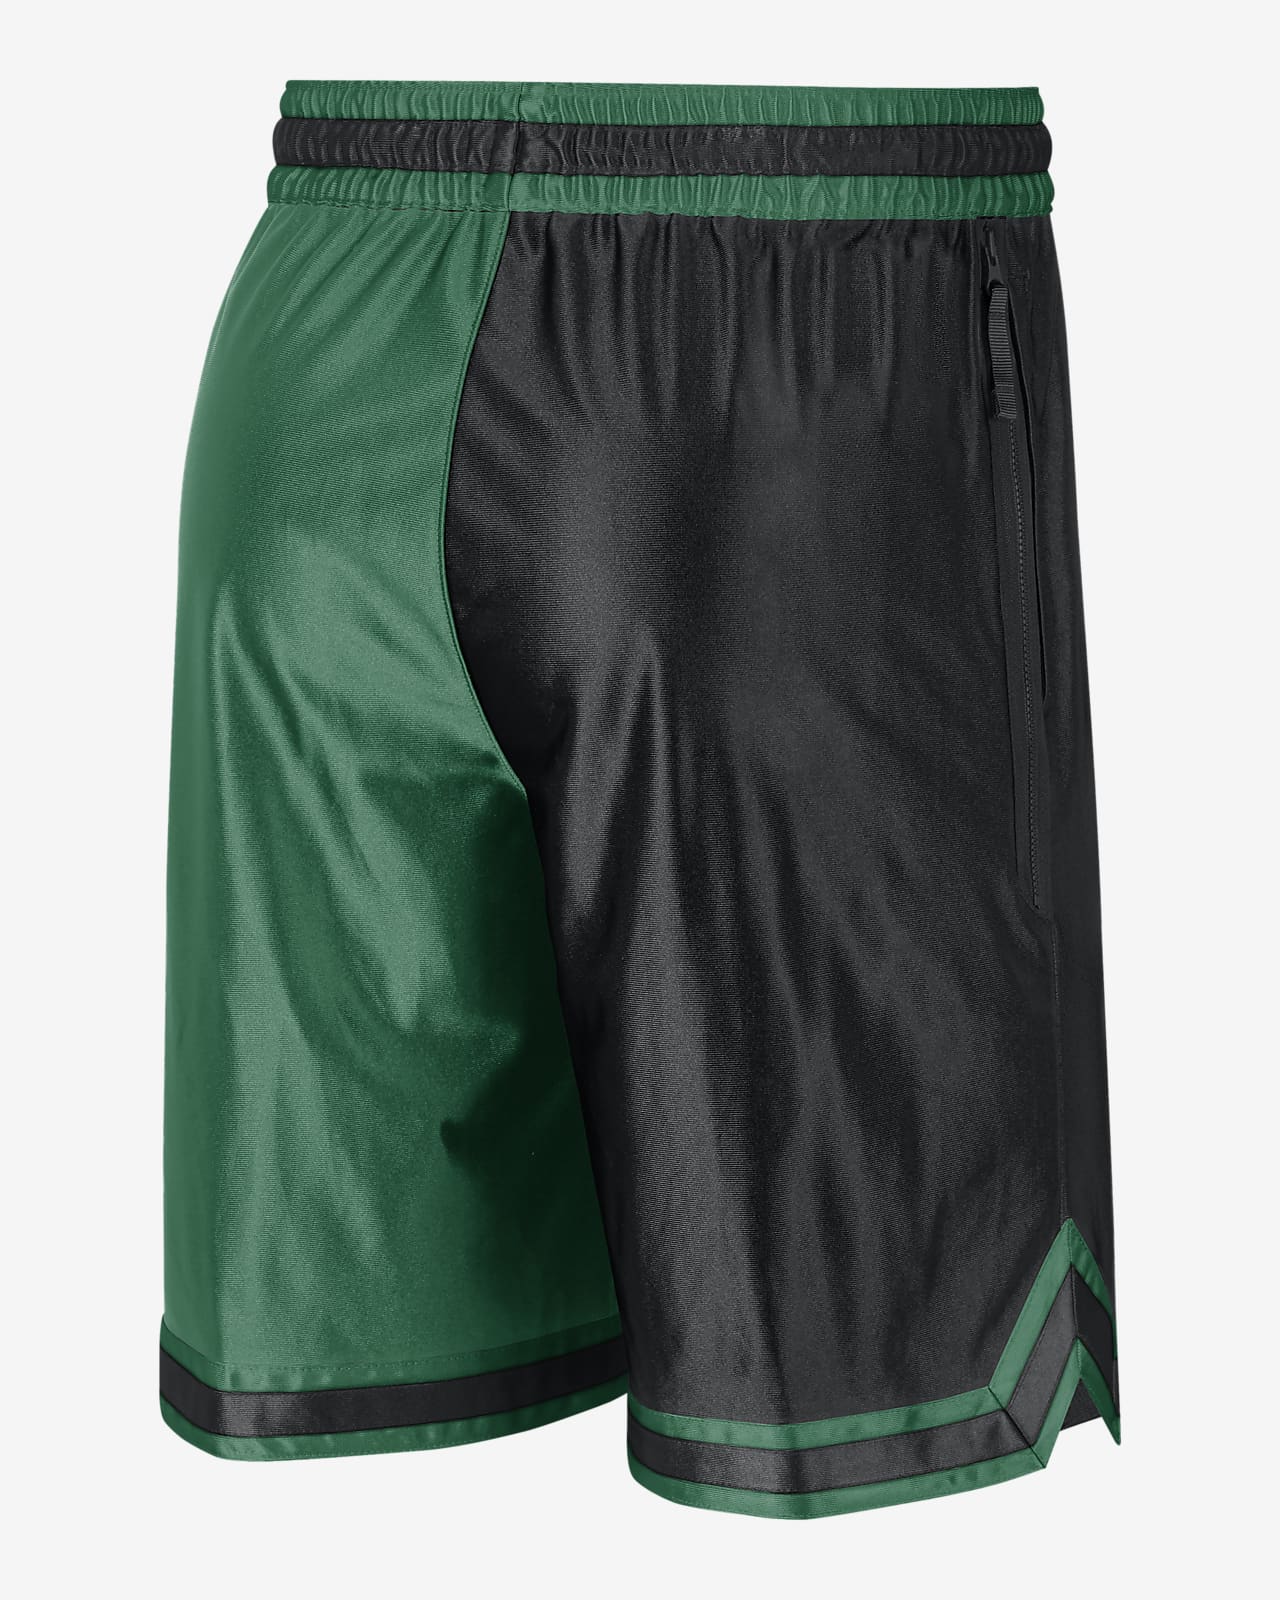 Boston Celtics NBA Basketball Boys Shorts XL